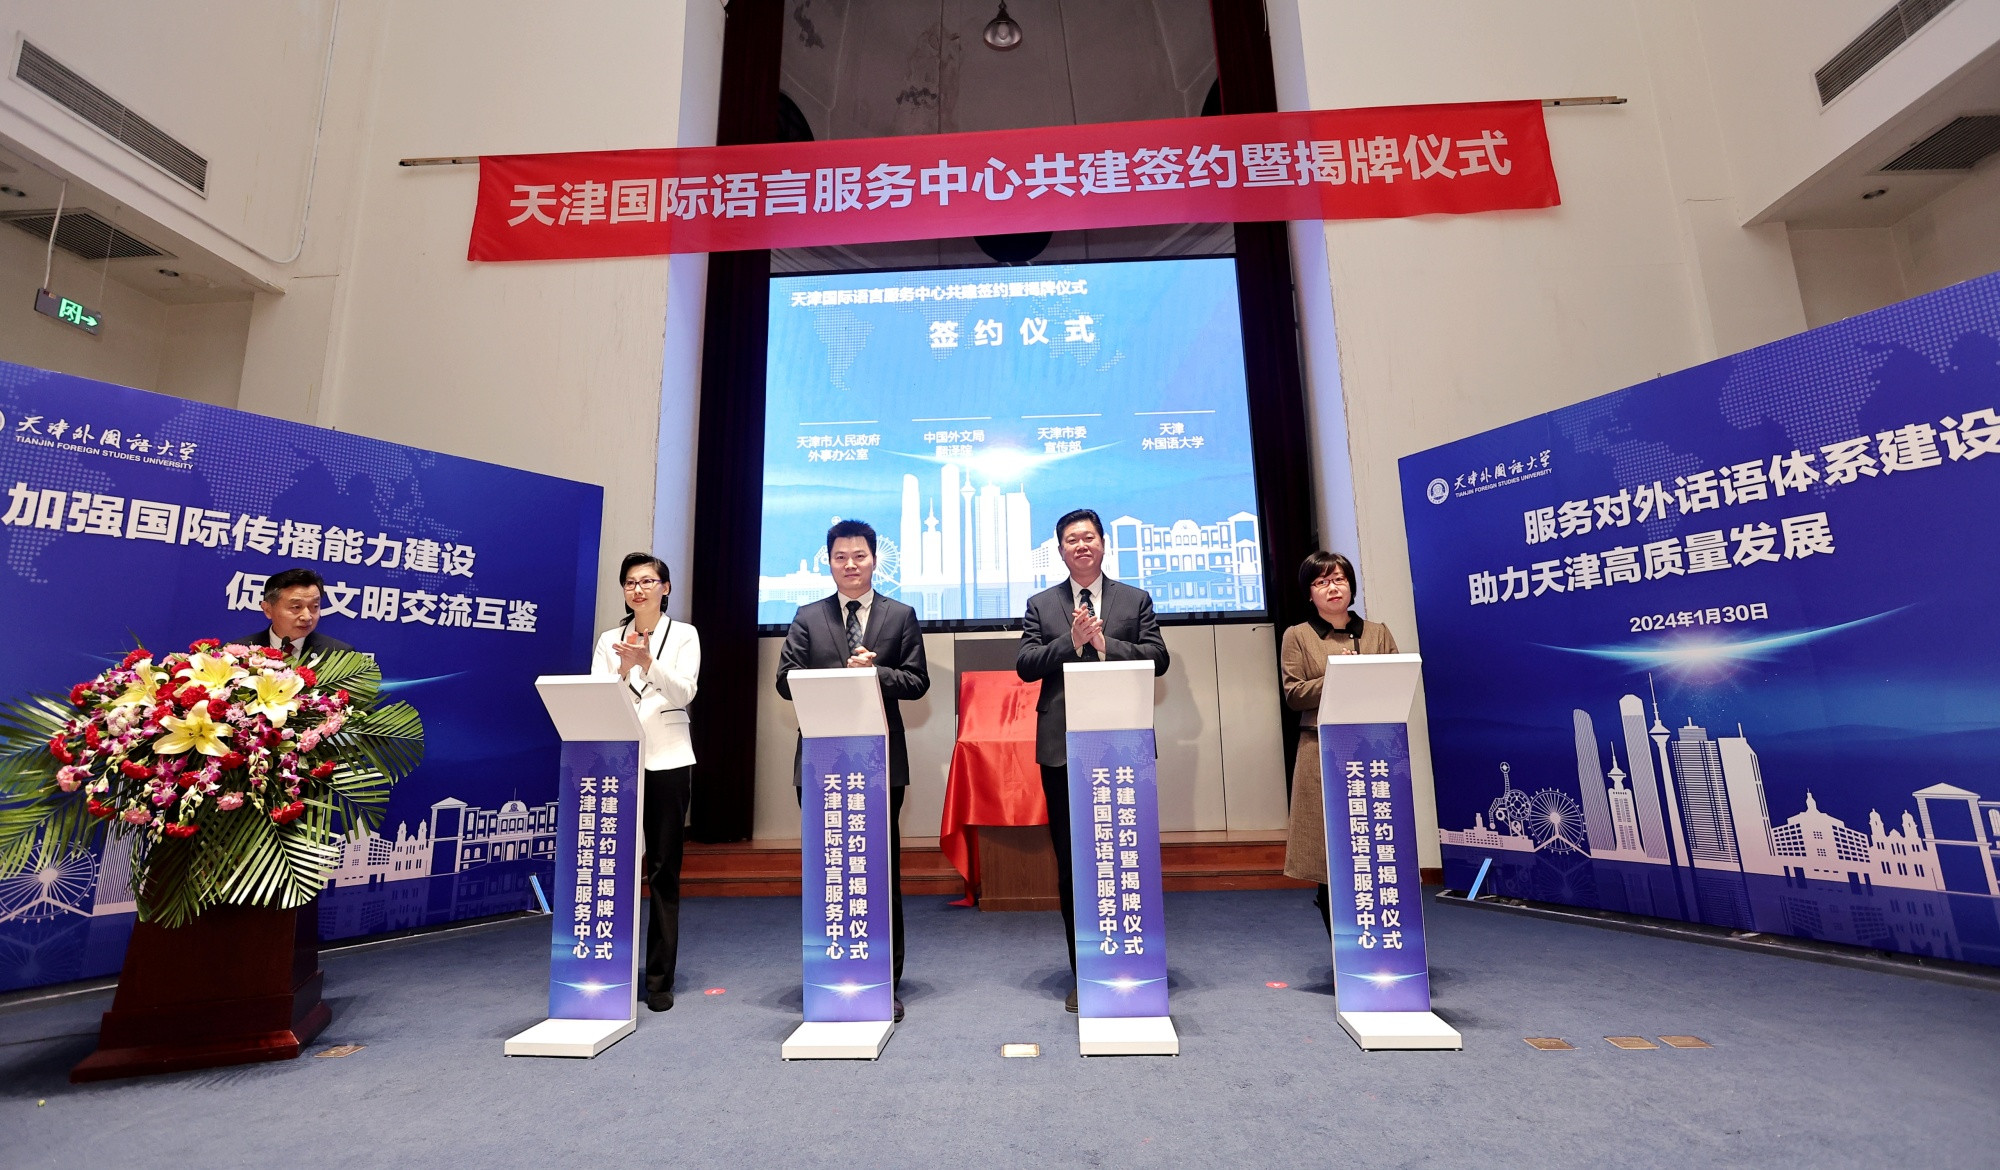 天津国际语言服务中心在天津外国语大学揭牌成立